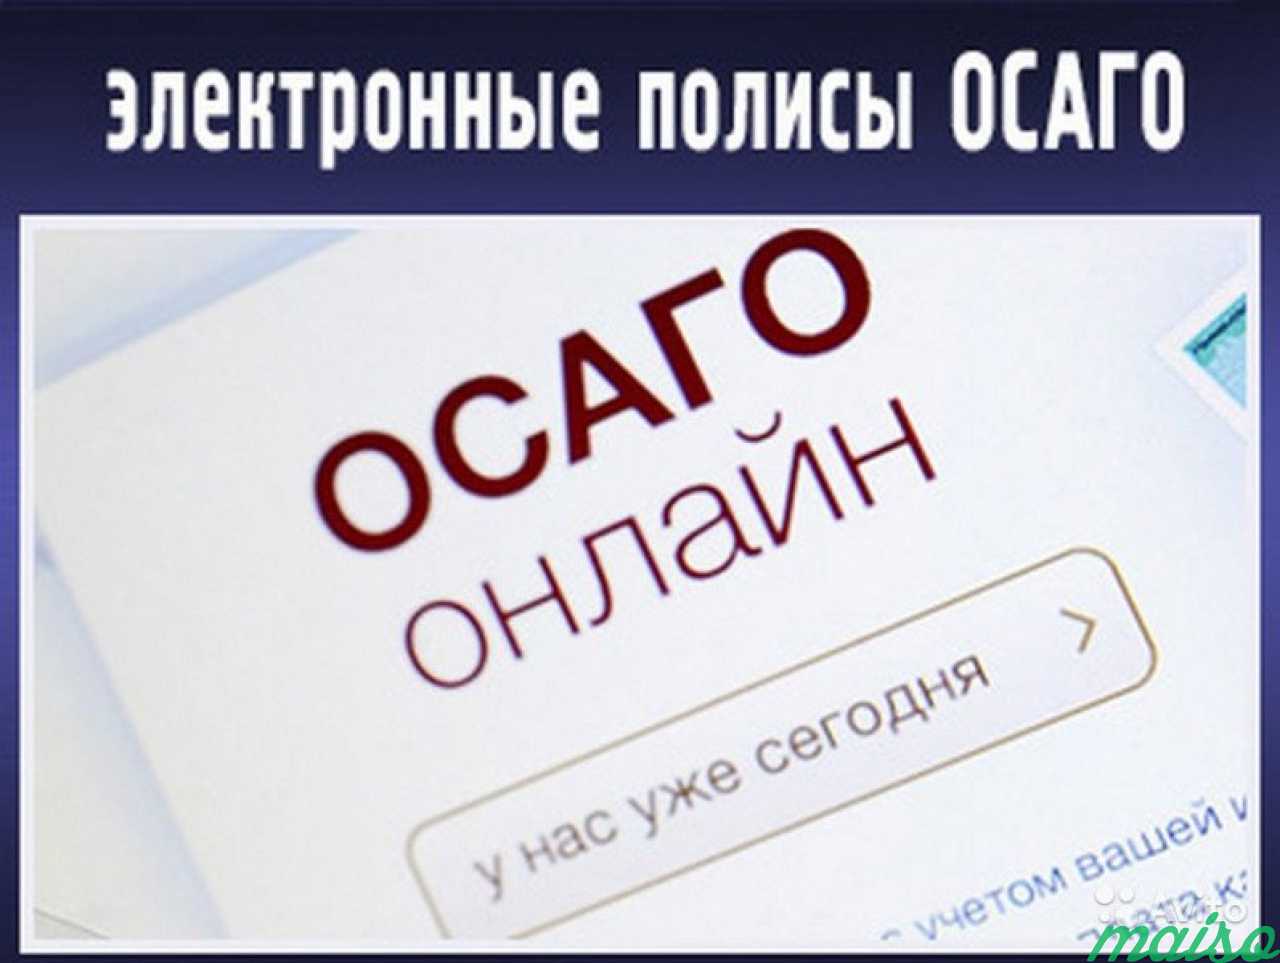 Оформить Осаго Онлайн В Новосибирске